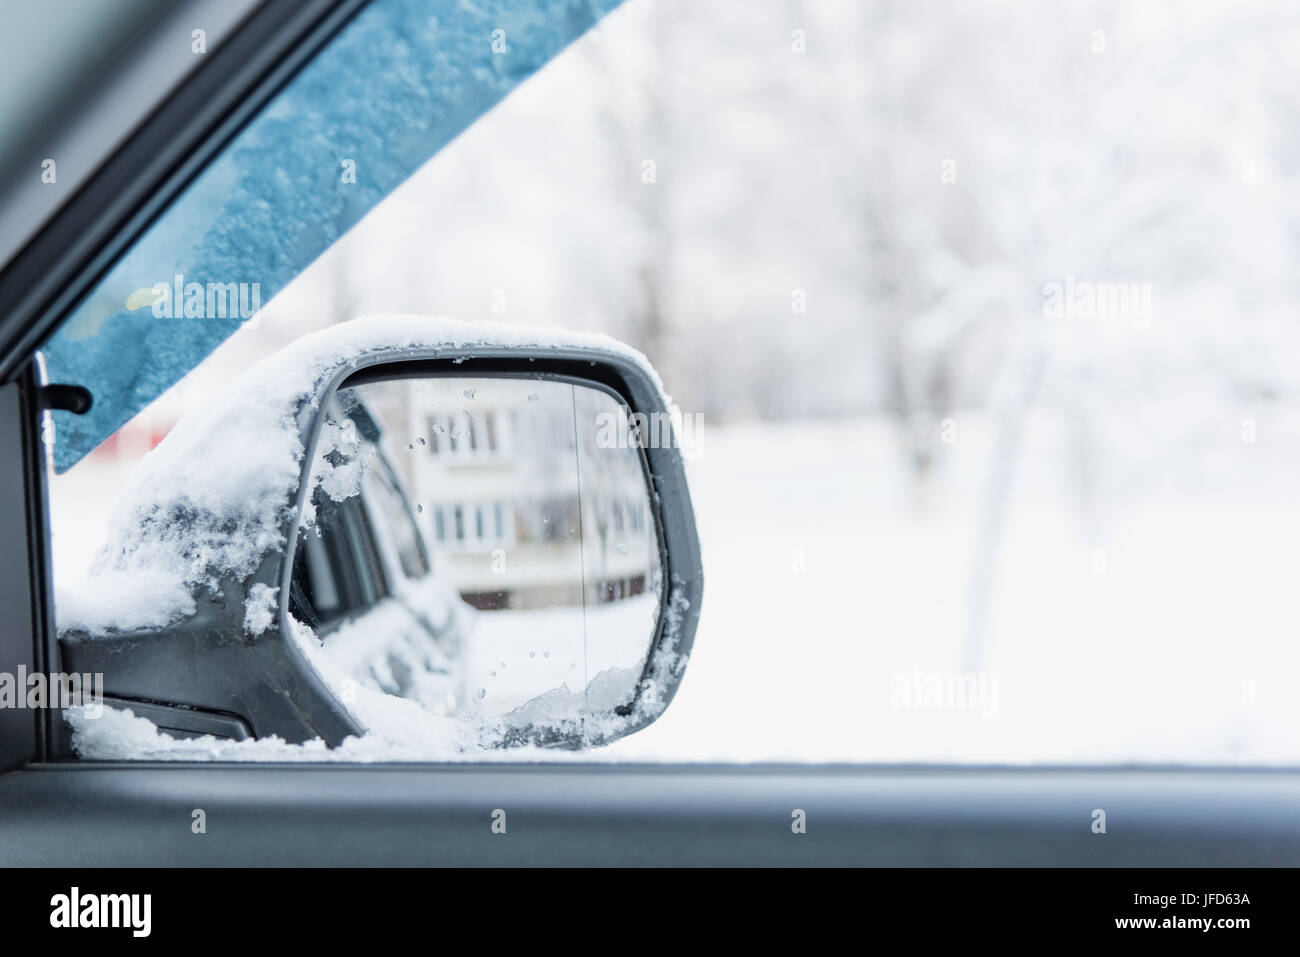 Miroir de voiture d'hiver Banque D'Images